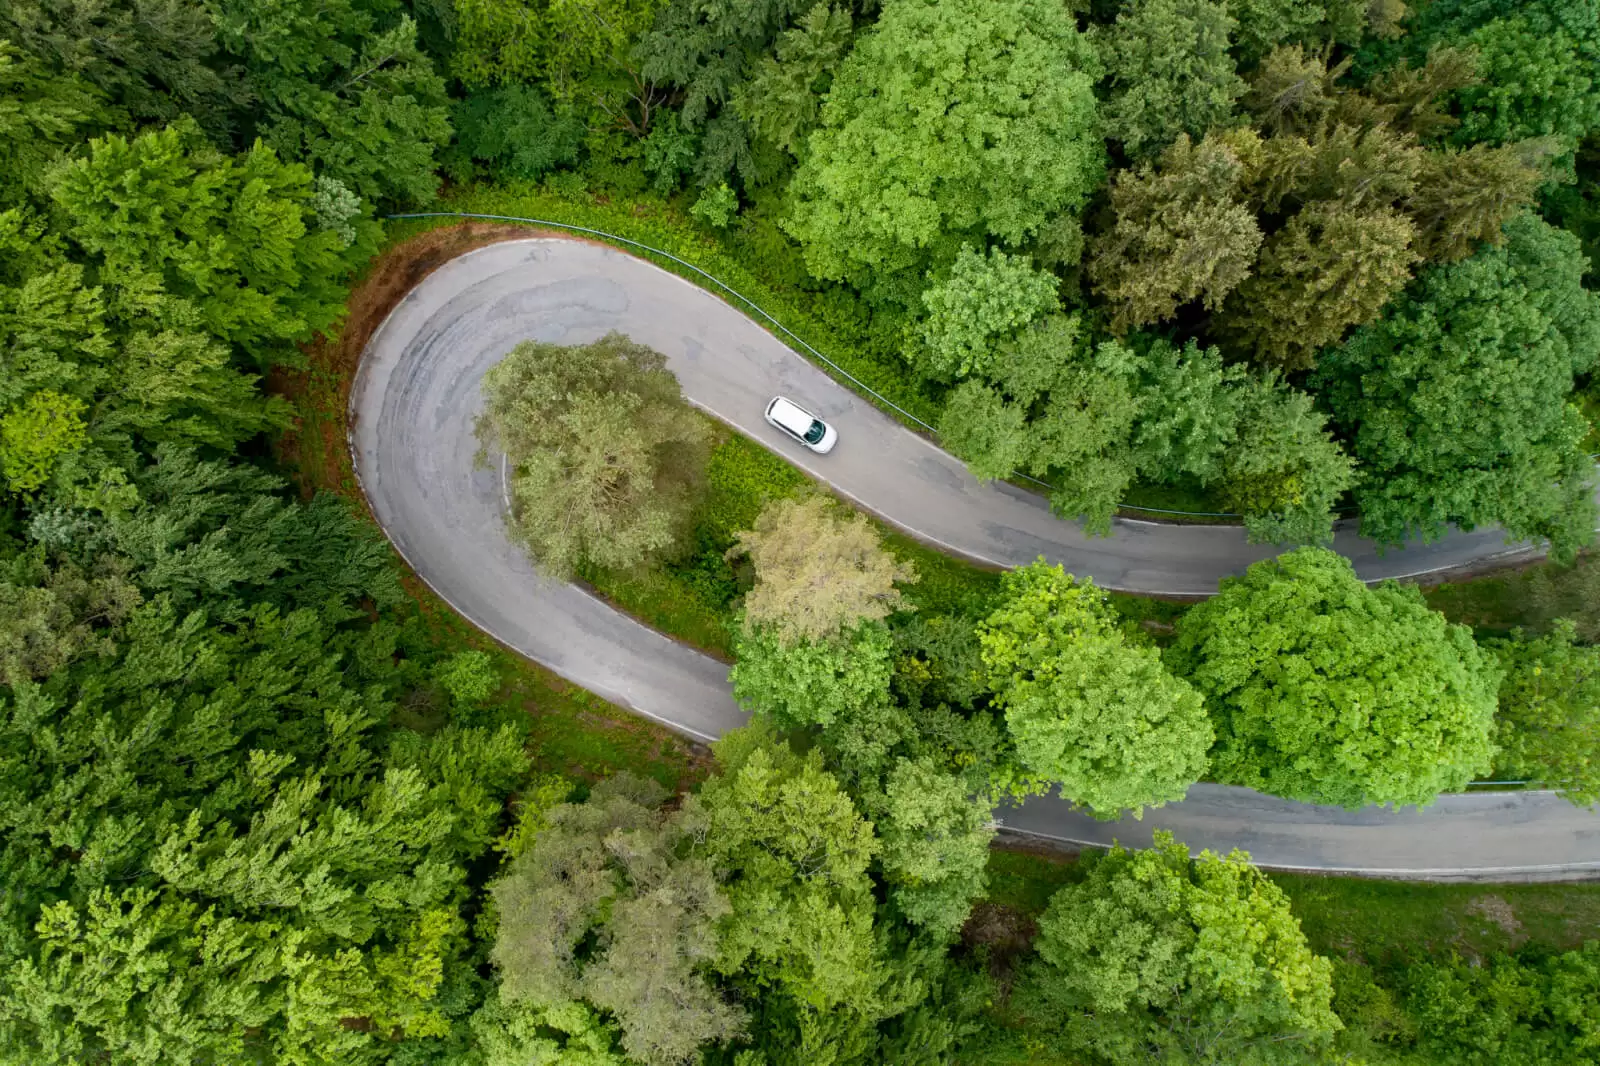 Vista aerea de un coche tomando una curva en medio del bosque